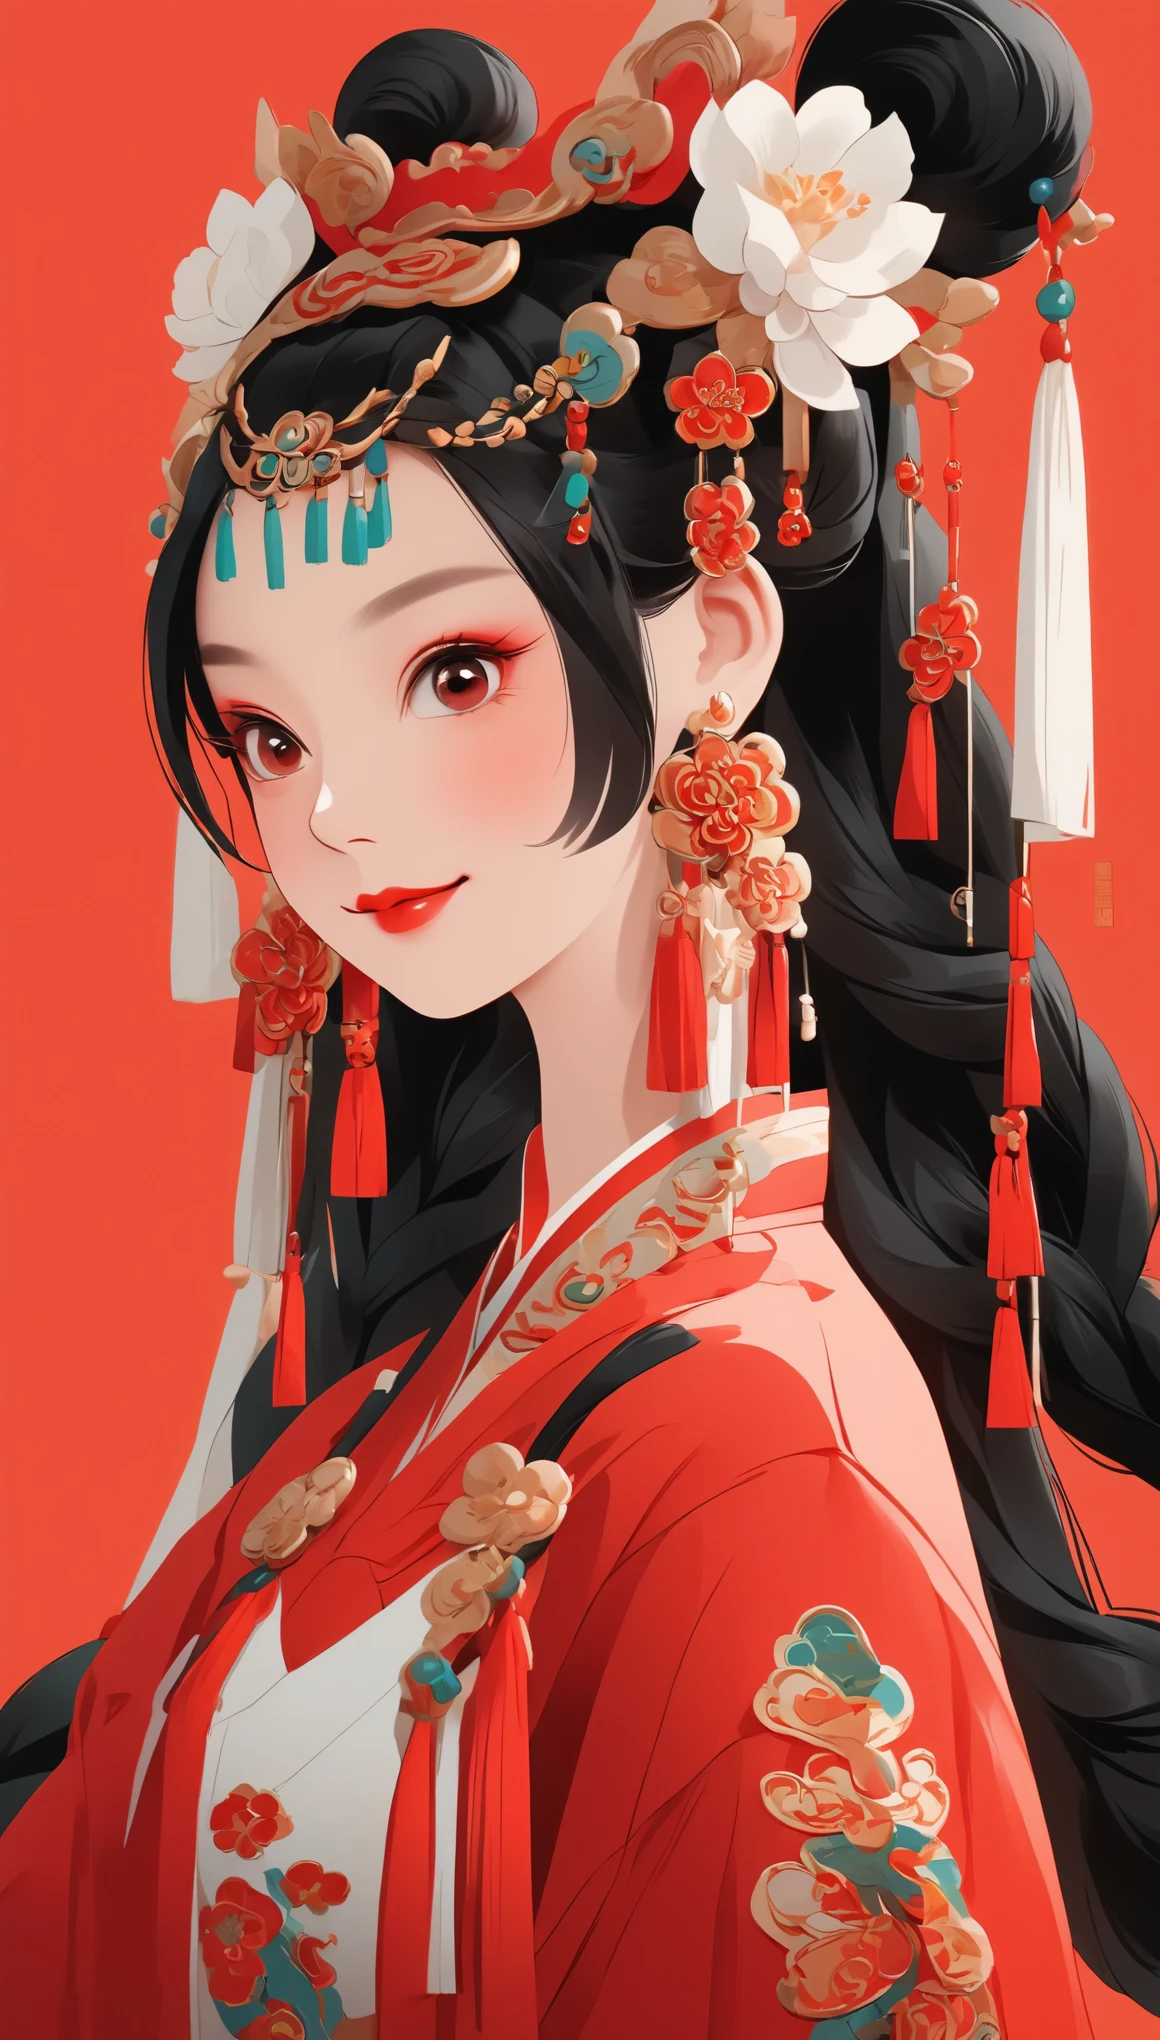 벡터 아트，전신，귀여운 중국 소녀의 평면 그림 스타일, 이중으로 땋은 땋은 머리 검은 머리, 웃고있는, 귀걸이 착용, 확대，현대적인 미니멀리스트，빨간색 배경